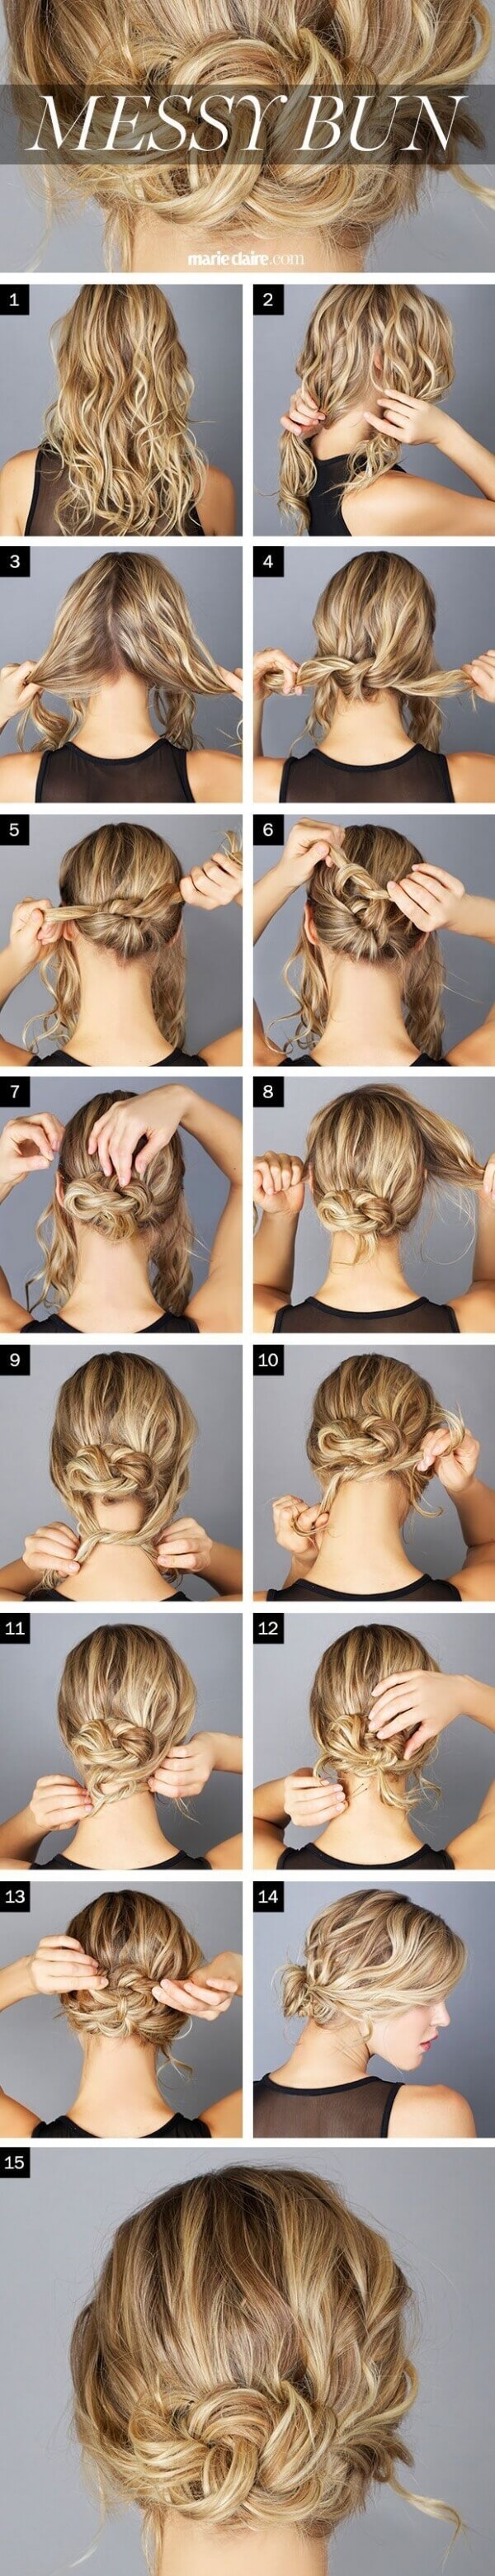 13 kiểu tóc đẹp đơn giản tiết kiệm thời gian cho mẹ 5